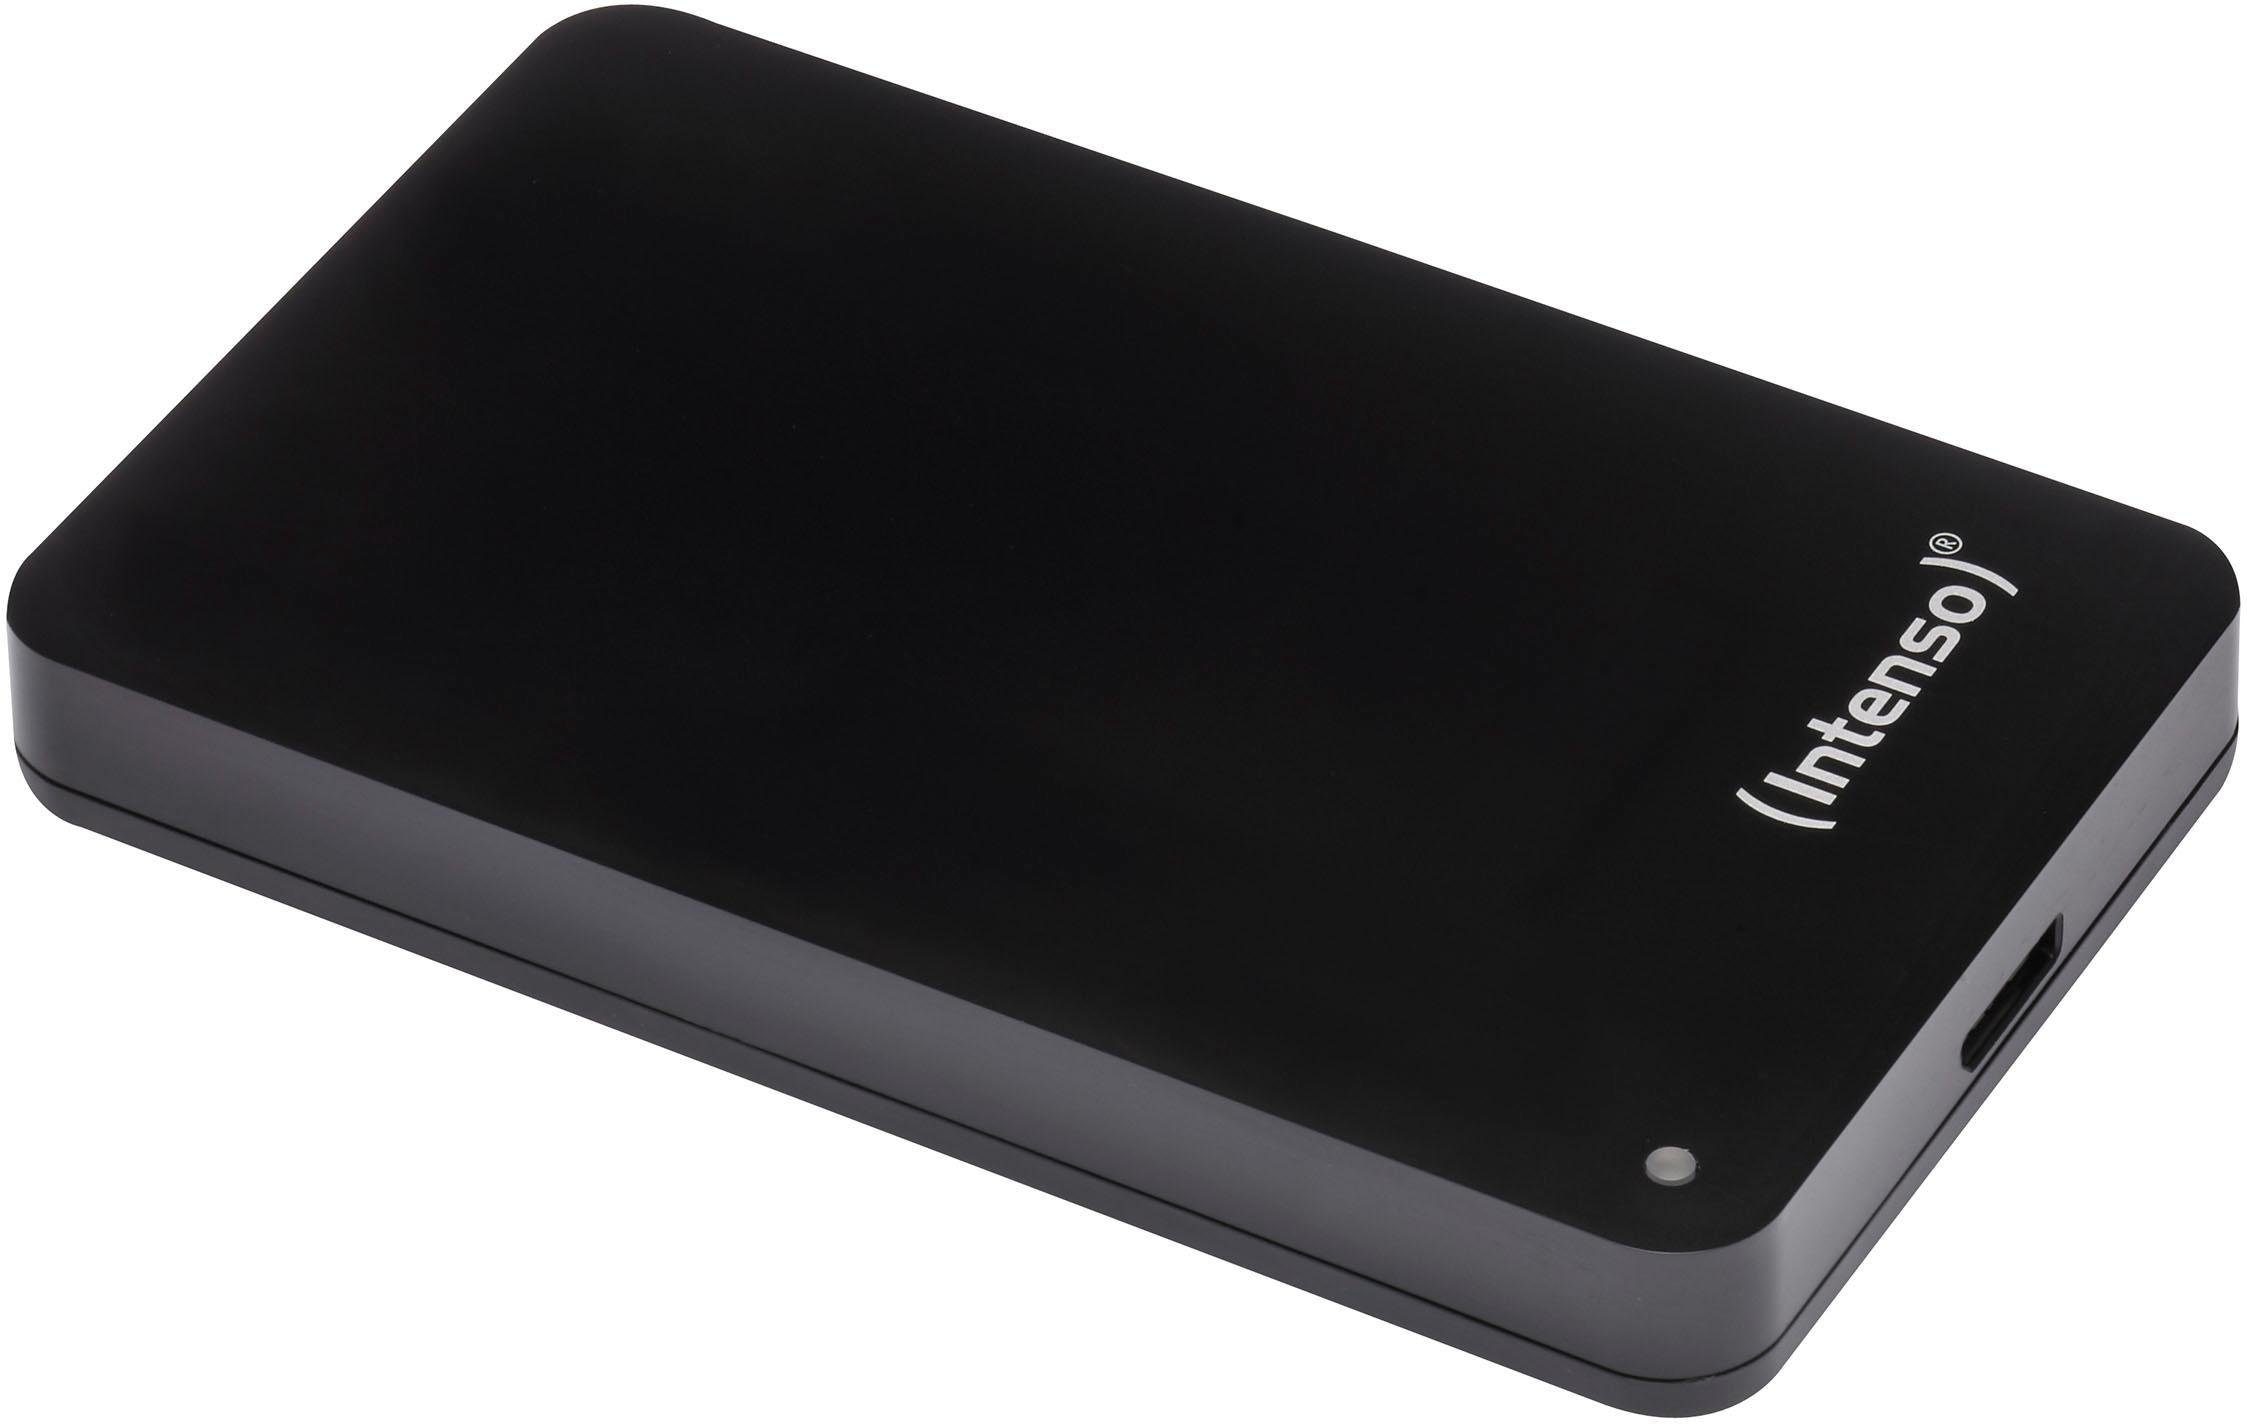 Intenso externe HDD-Festplatte »Memory Drive«, 2,5 Zoll, Anschluss USB 3.0, inkl. Tasche